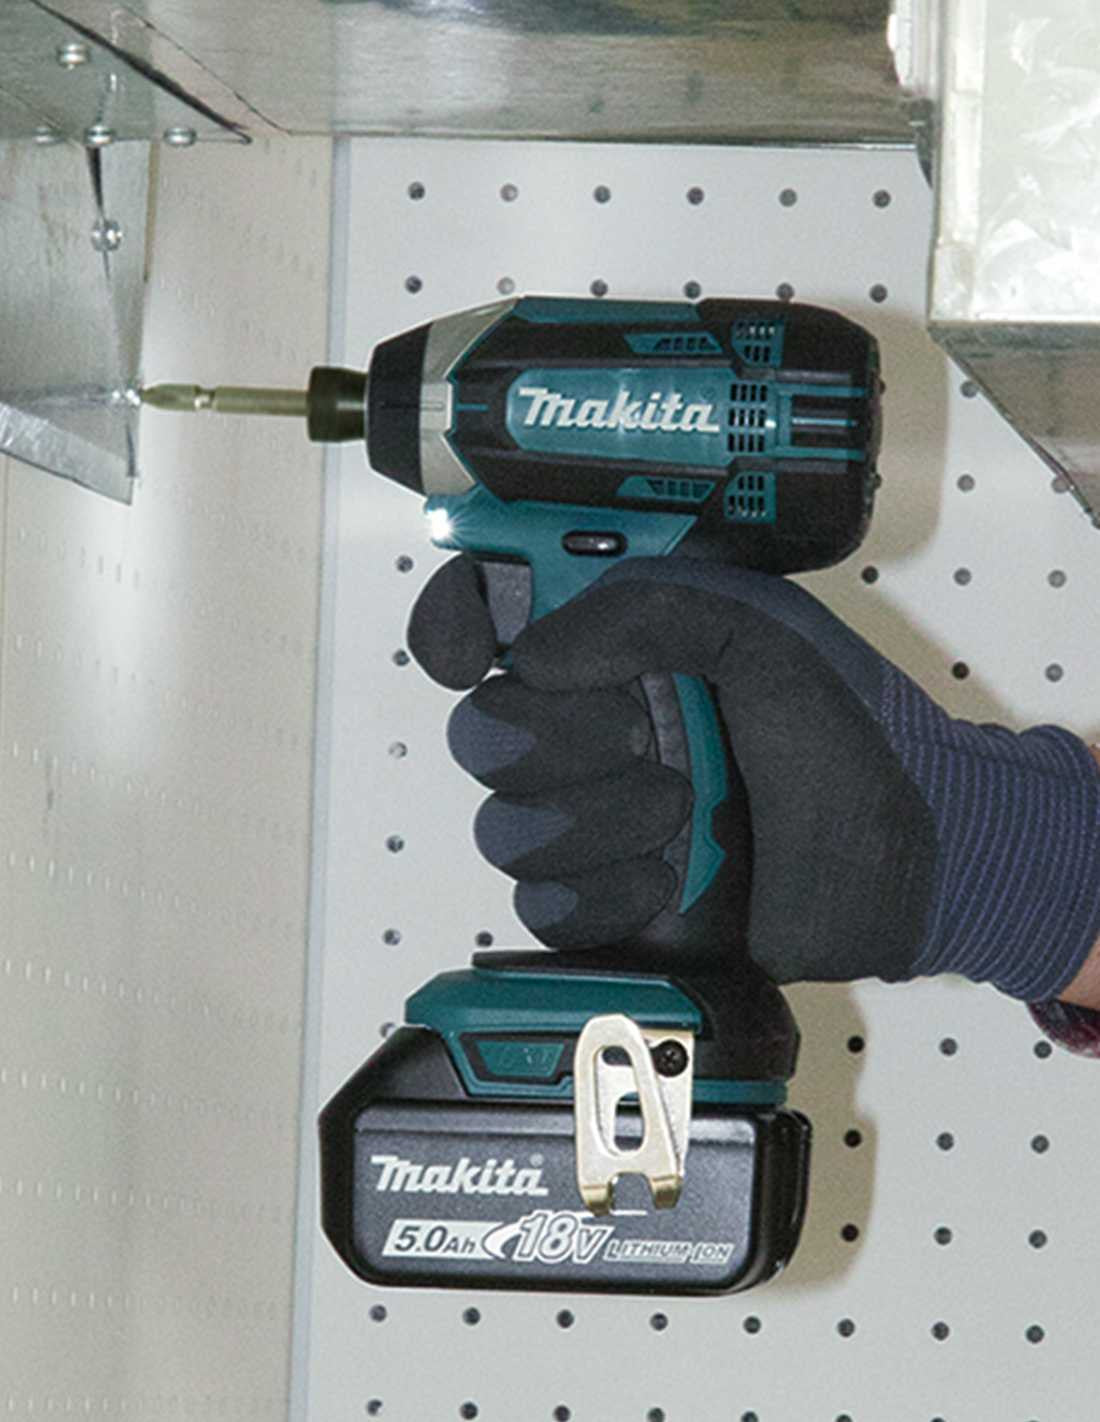 Makita-Set mit 11 Werkzeugen + 3 Schlägern + Ladegerät + 2 Taschen DLX1143BL3